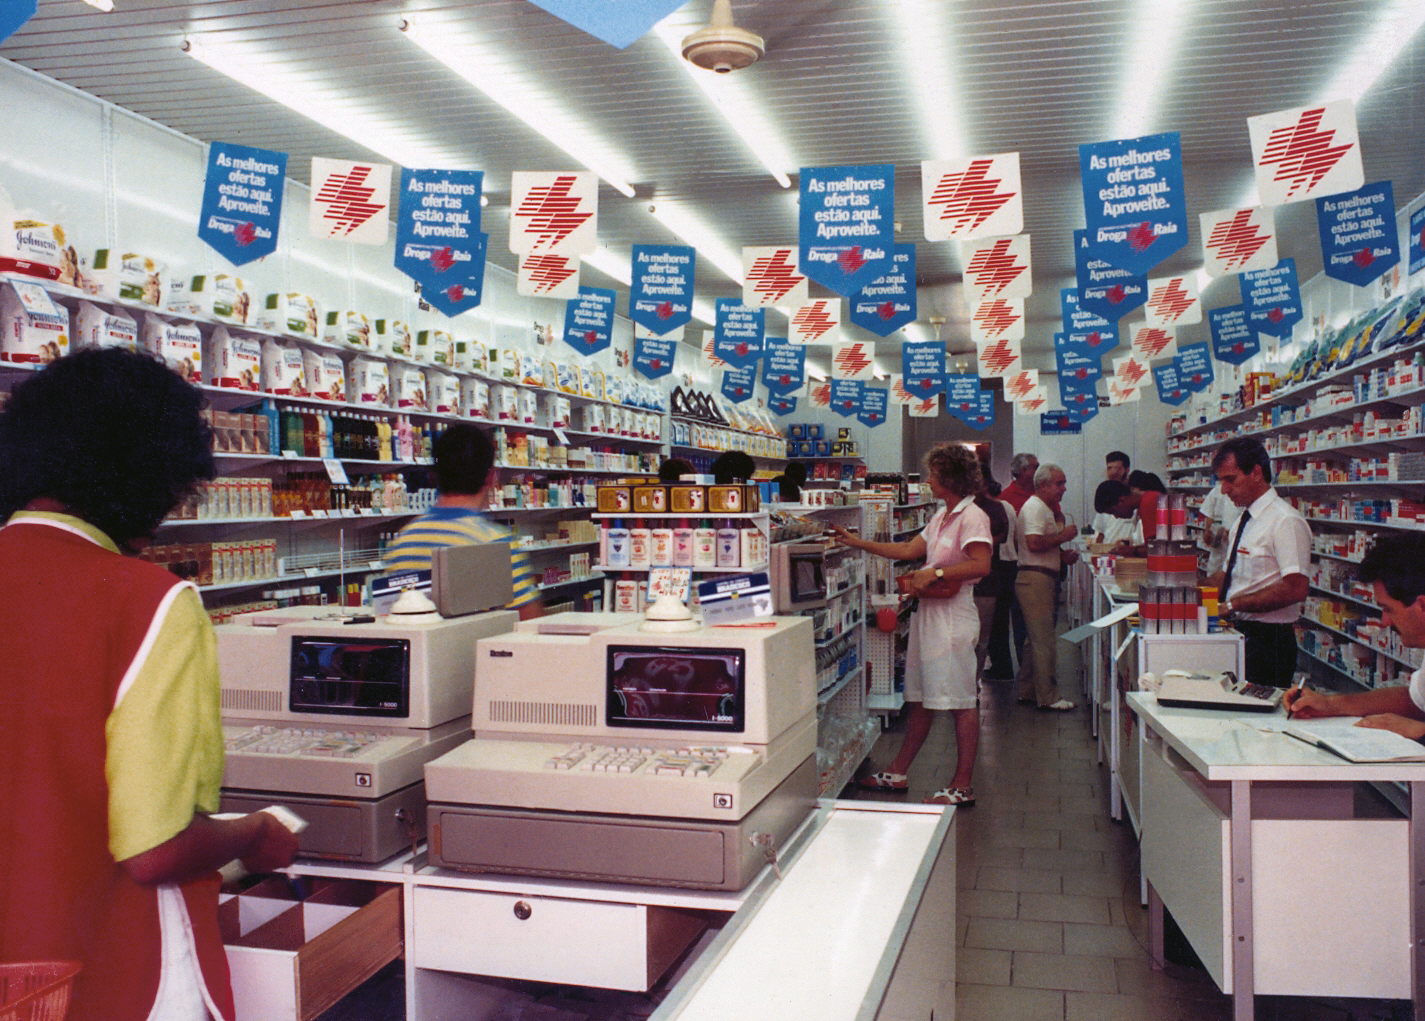 Foto do interior de uma loja da Droga Raia nos anos 1980 com caixas registradoras, clientes ao redor das gôndolas e bandeirinhas publicitárias penduradas no teto.